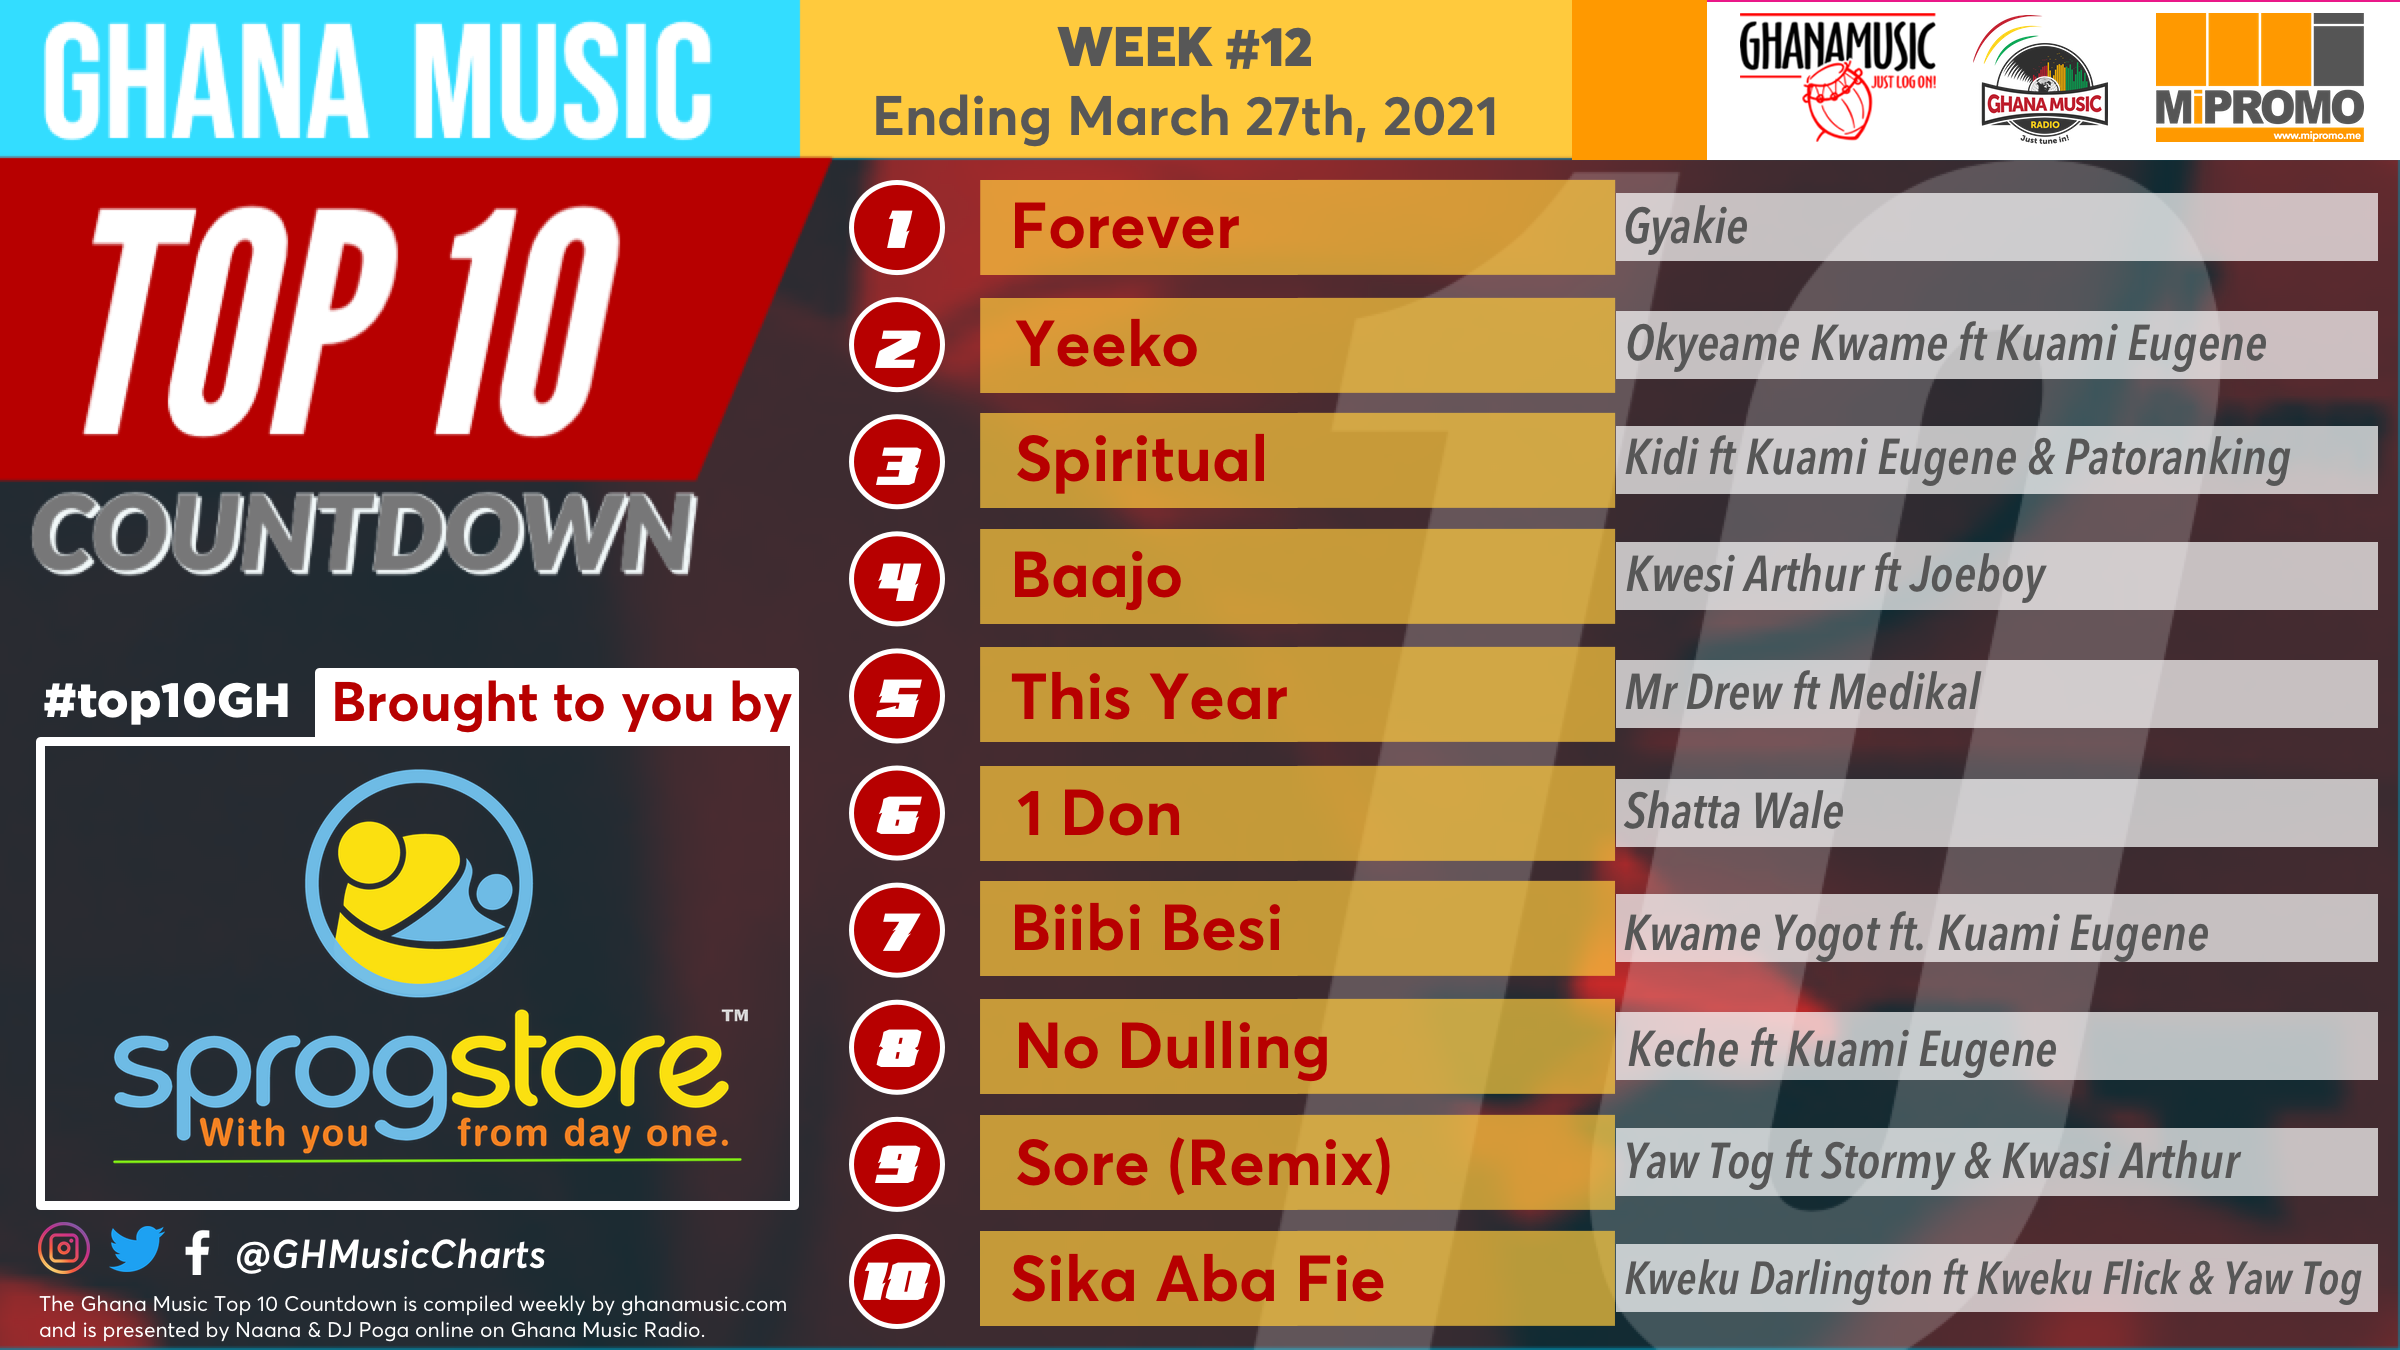 2021 Week 12: Ghana Music Top 10 Countdown